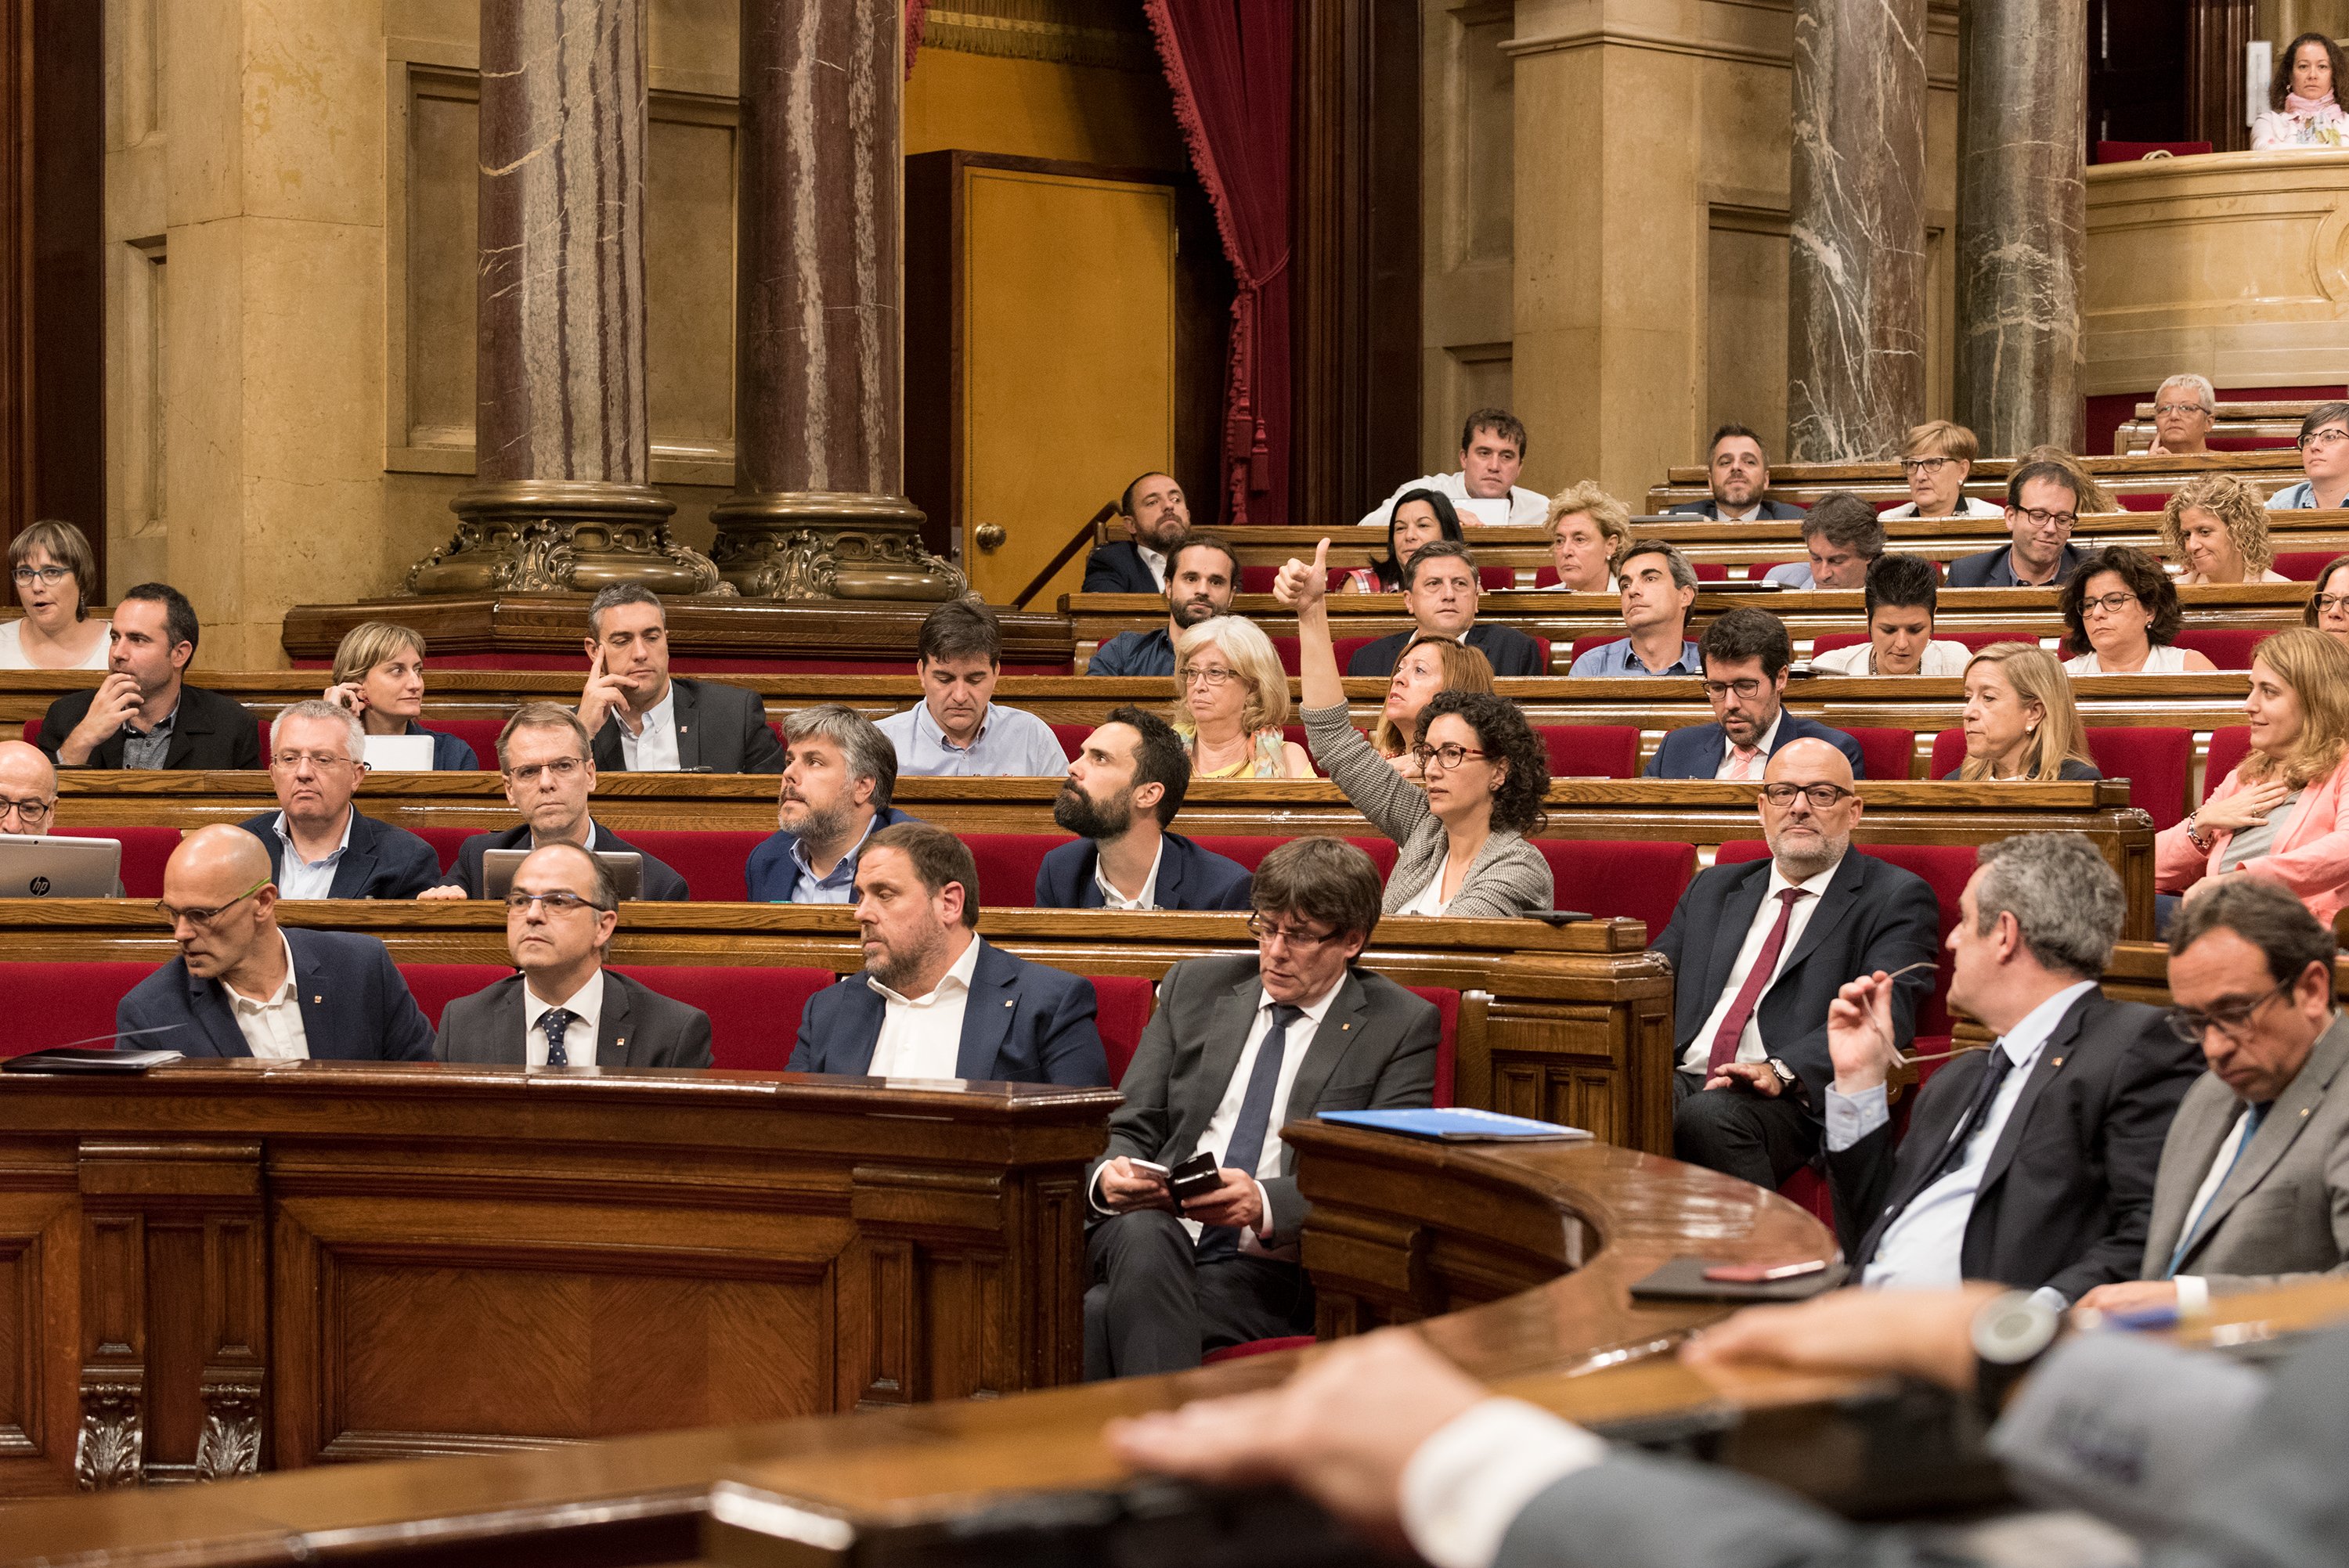 És anticonstitucional a Catalunya el que és constitucional a 14 comunitats?